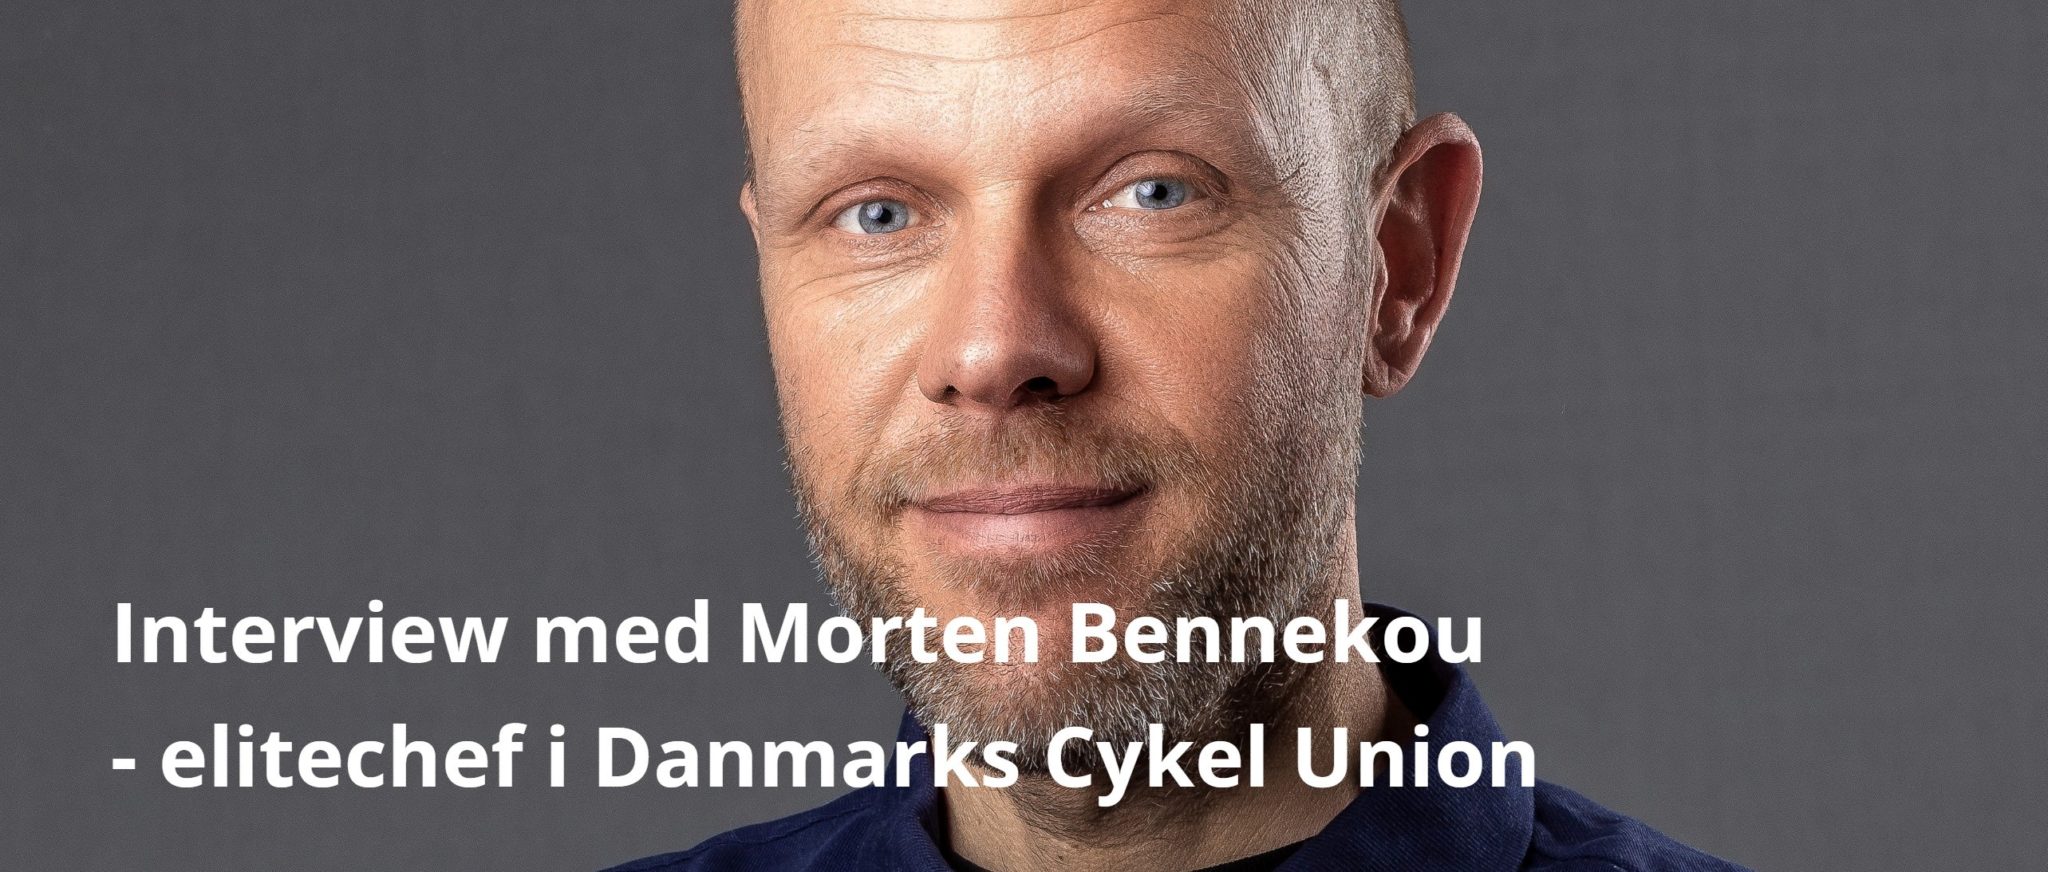 “Vi vil skabe hele mennesker”. Interview med Morten Bennekou om cykelsport og vindermentalitet